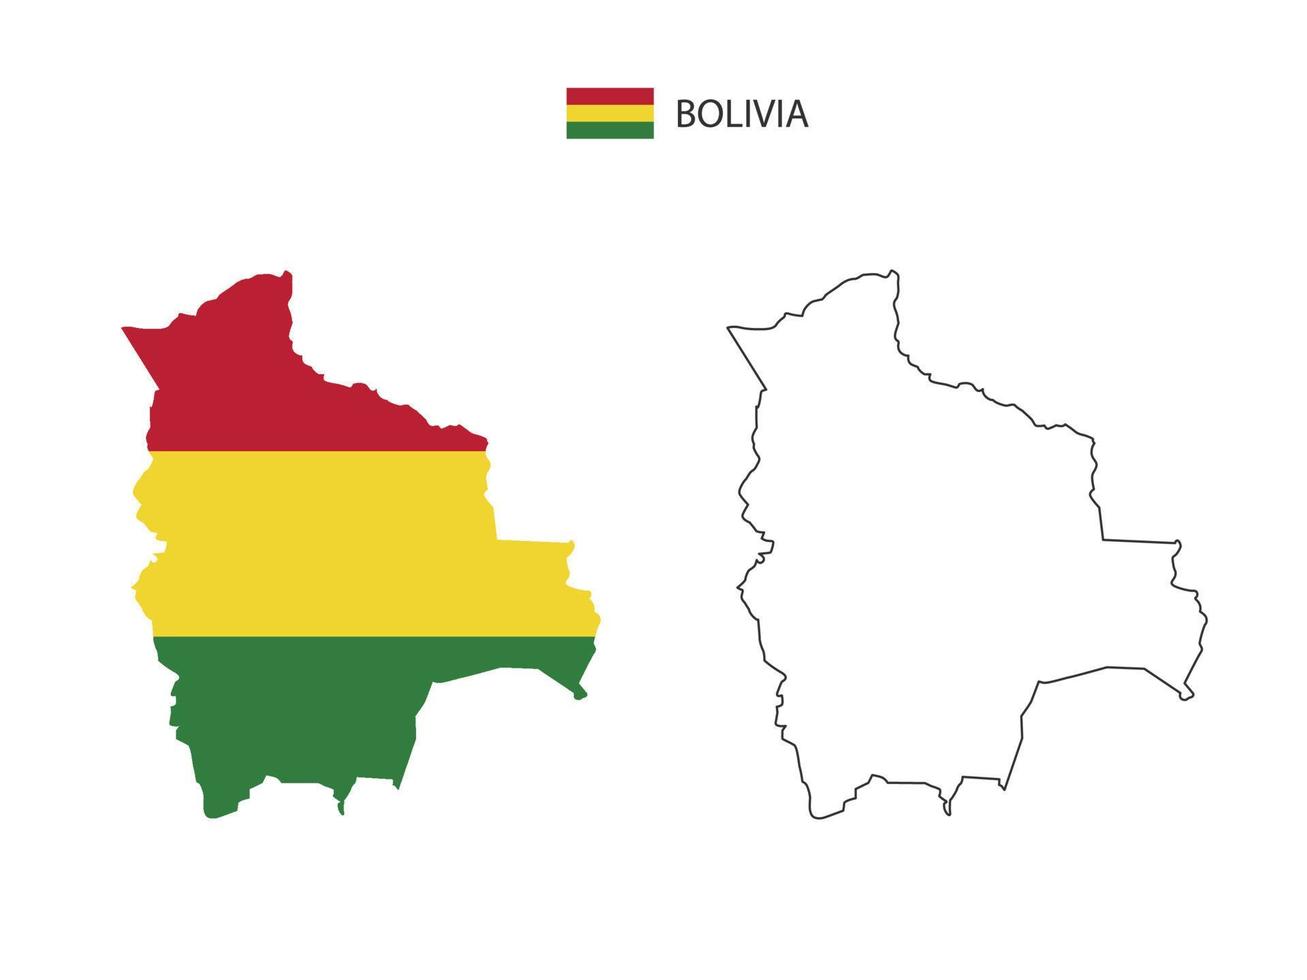 vetor da cidade do mapa da Bolívia dividido pelo estilo de simplicidade do contorno. tem 2 versões, versão de linha fina preta e cor da versão da bandeira do país. ambos os mapas estavam no fundo branco.